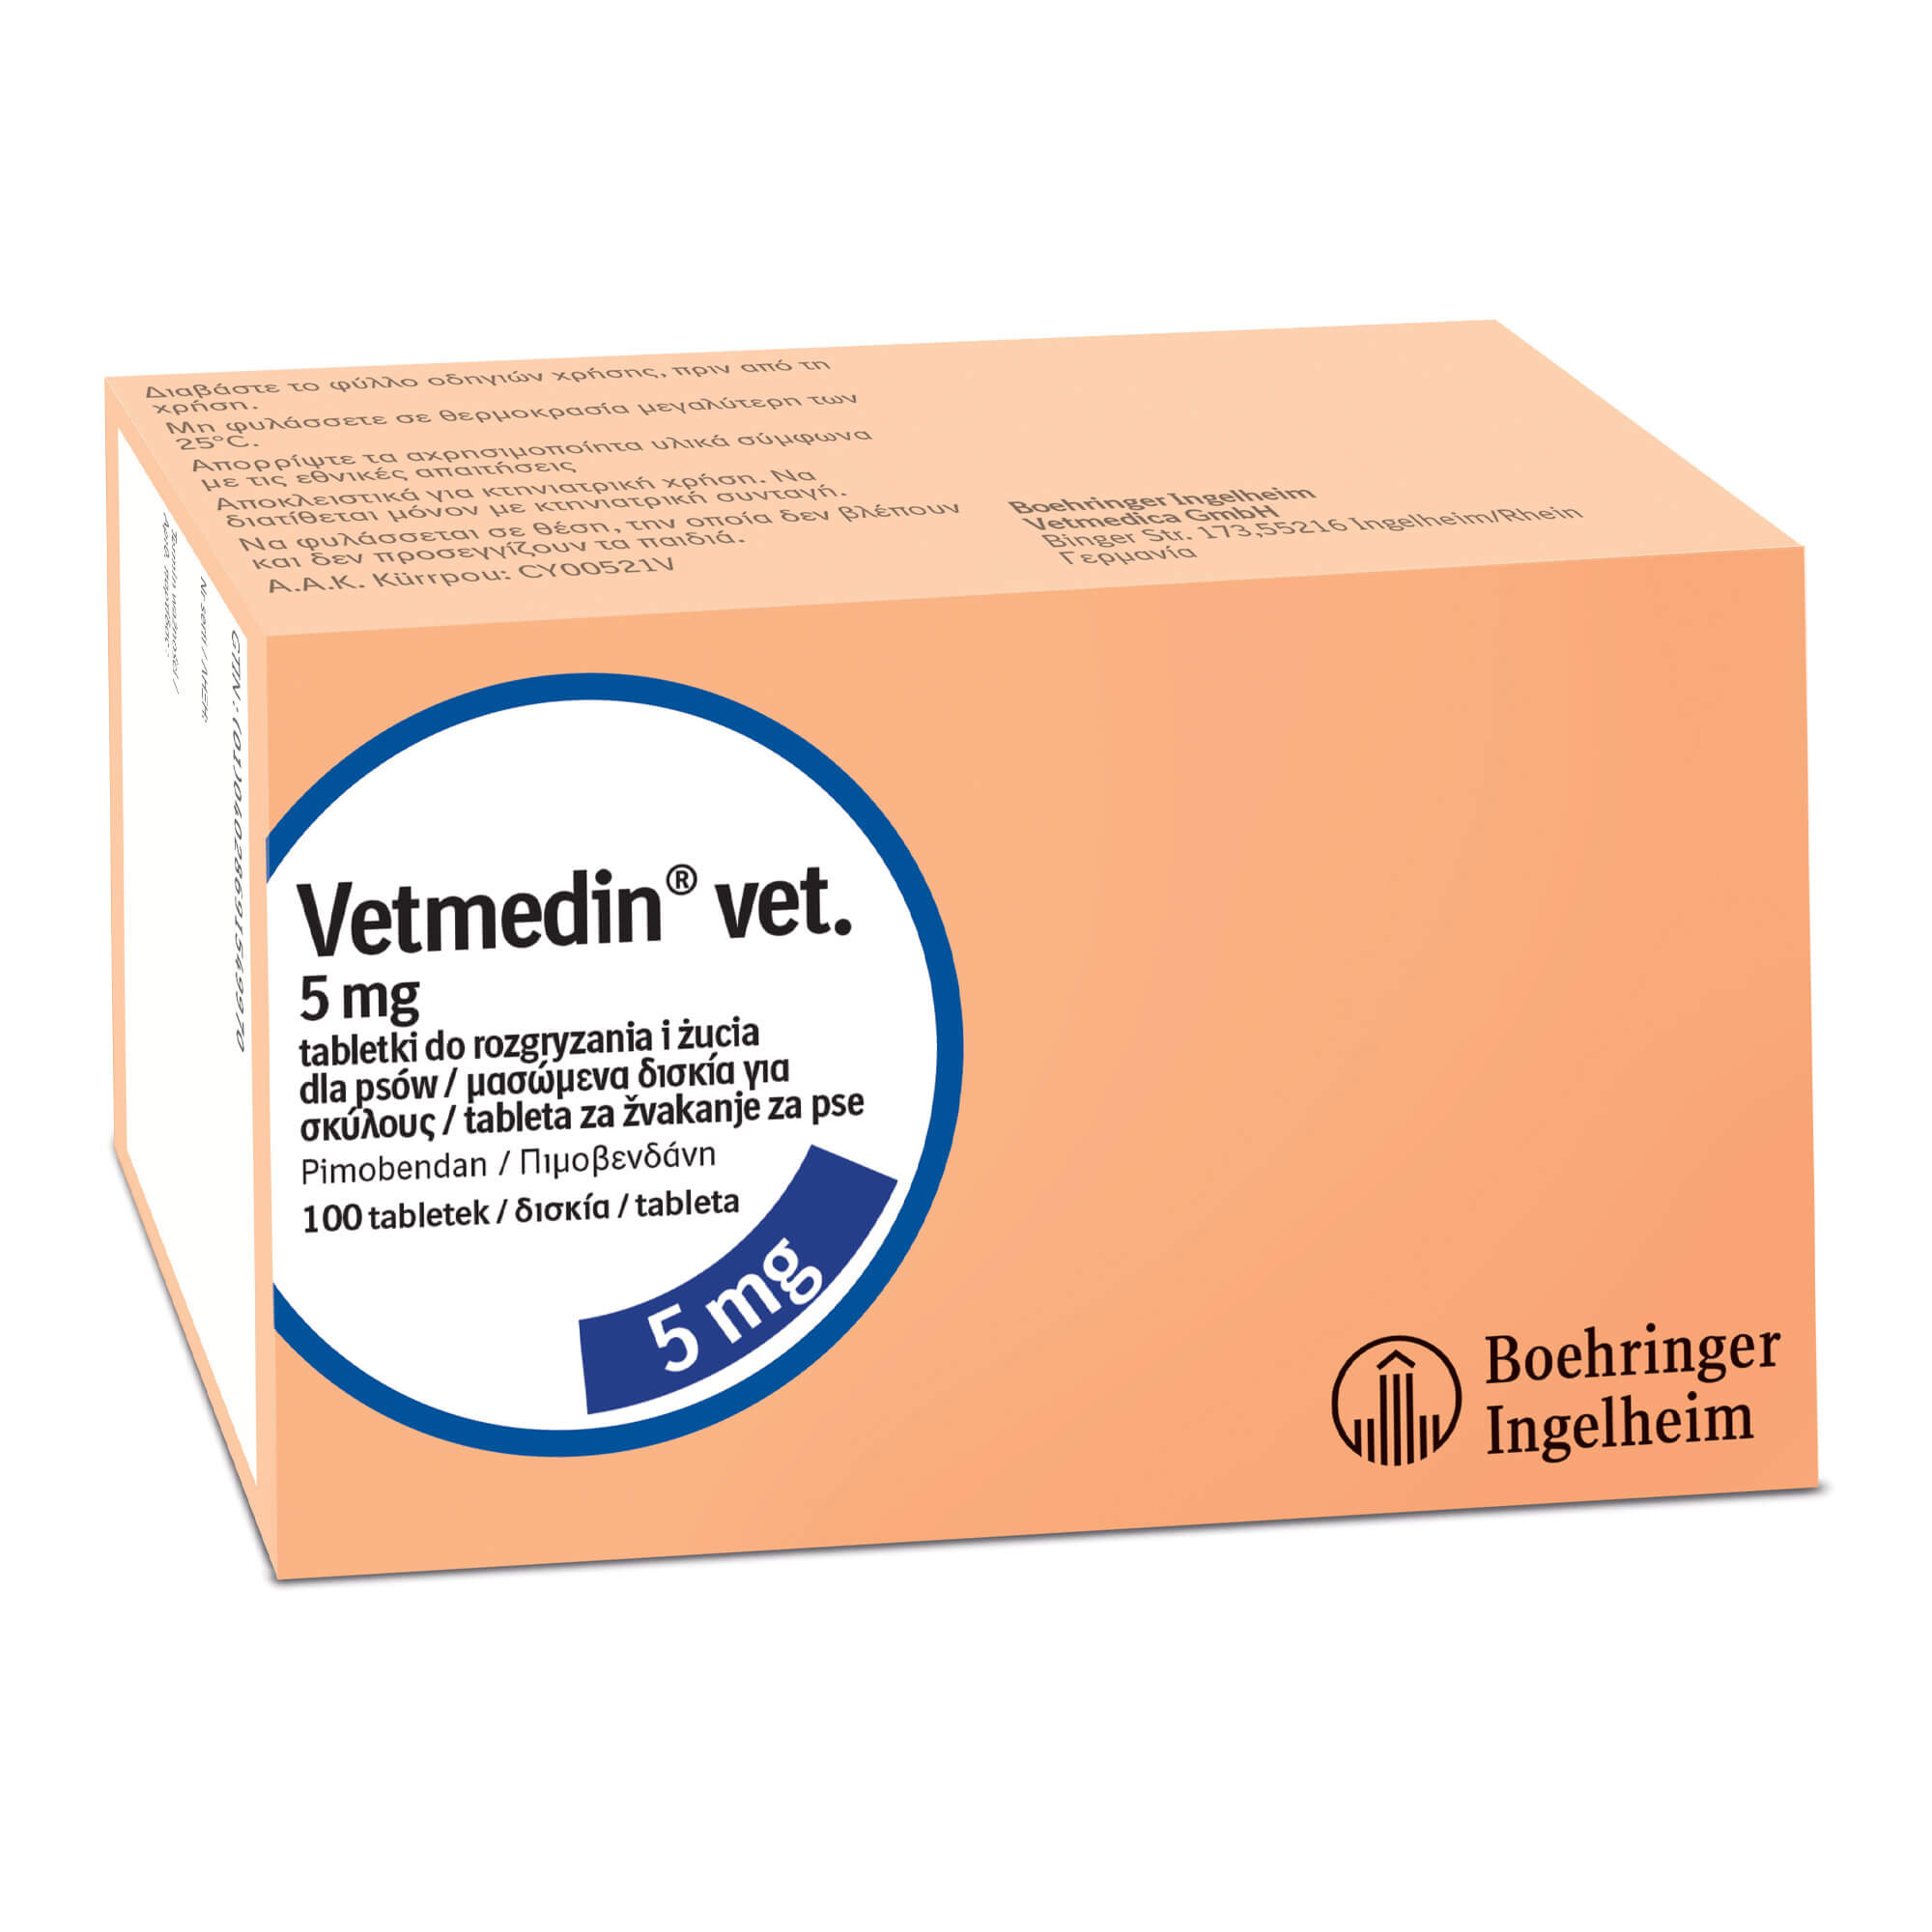 vetmedin-vet-5-mg-tableta-za-vakanje-za-pse-100-tableta